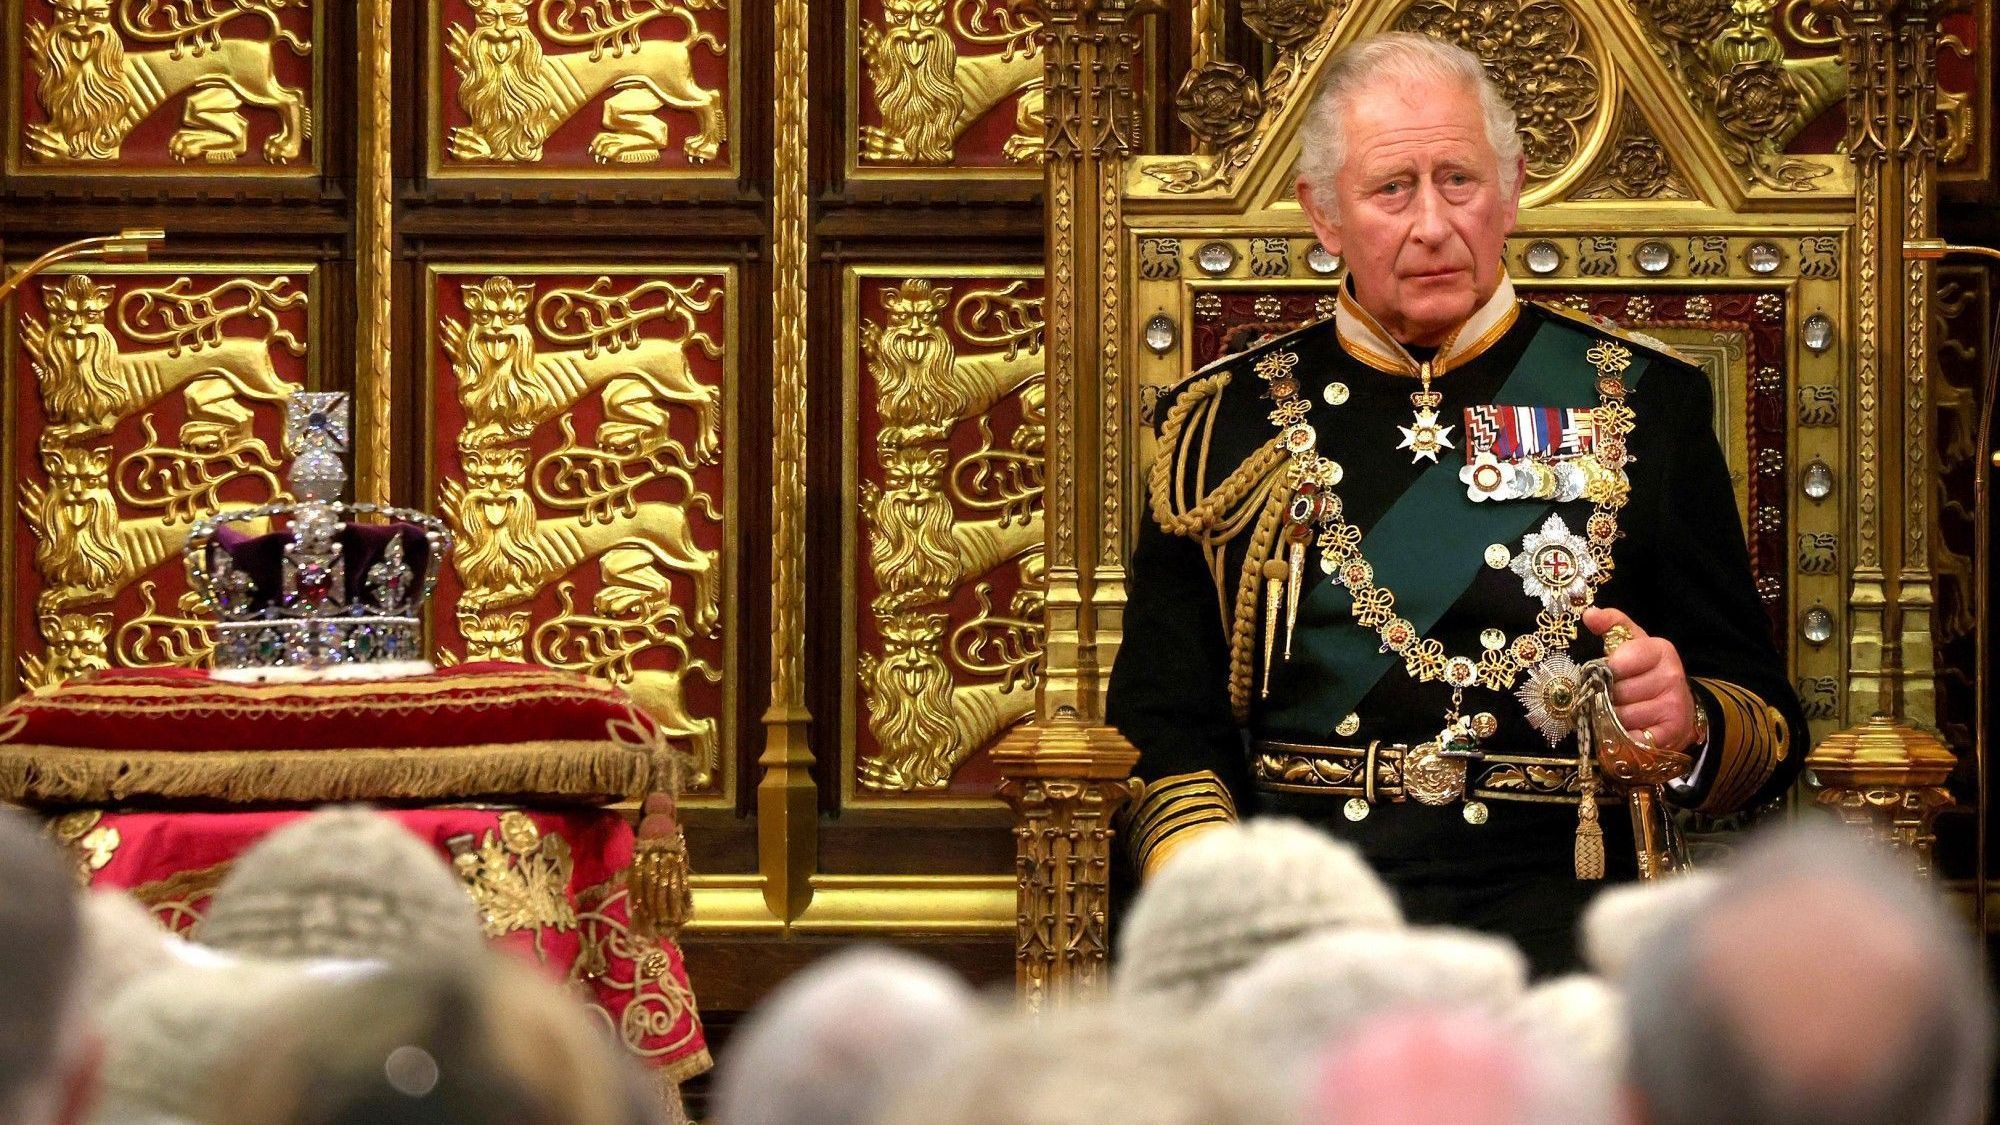 Krönung von König Charles III. und Camilla am 6. Mai in London